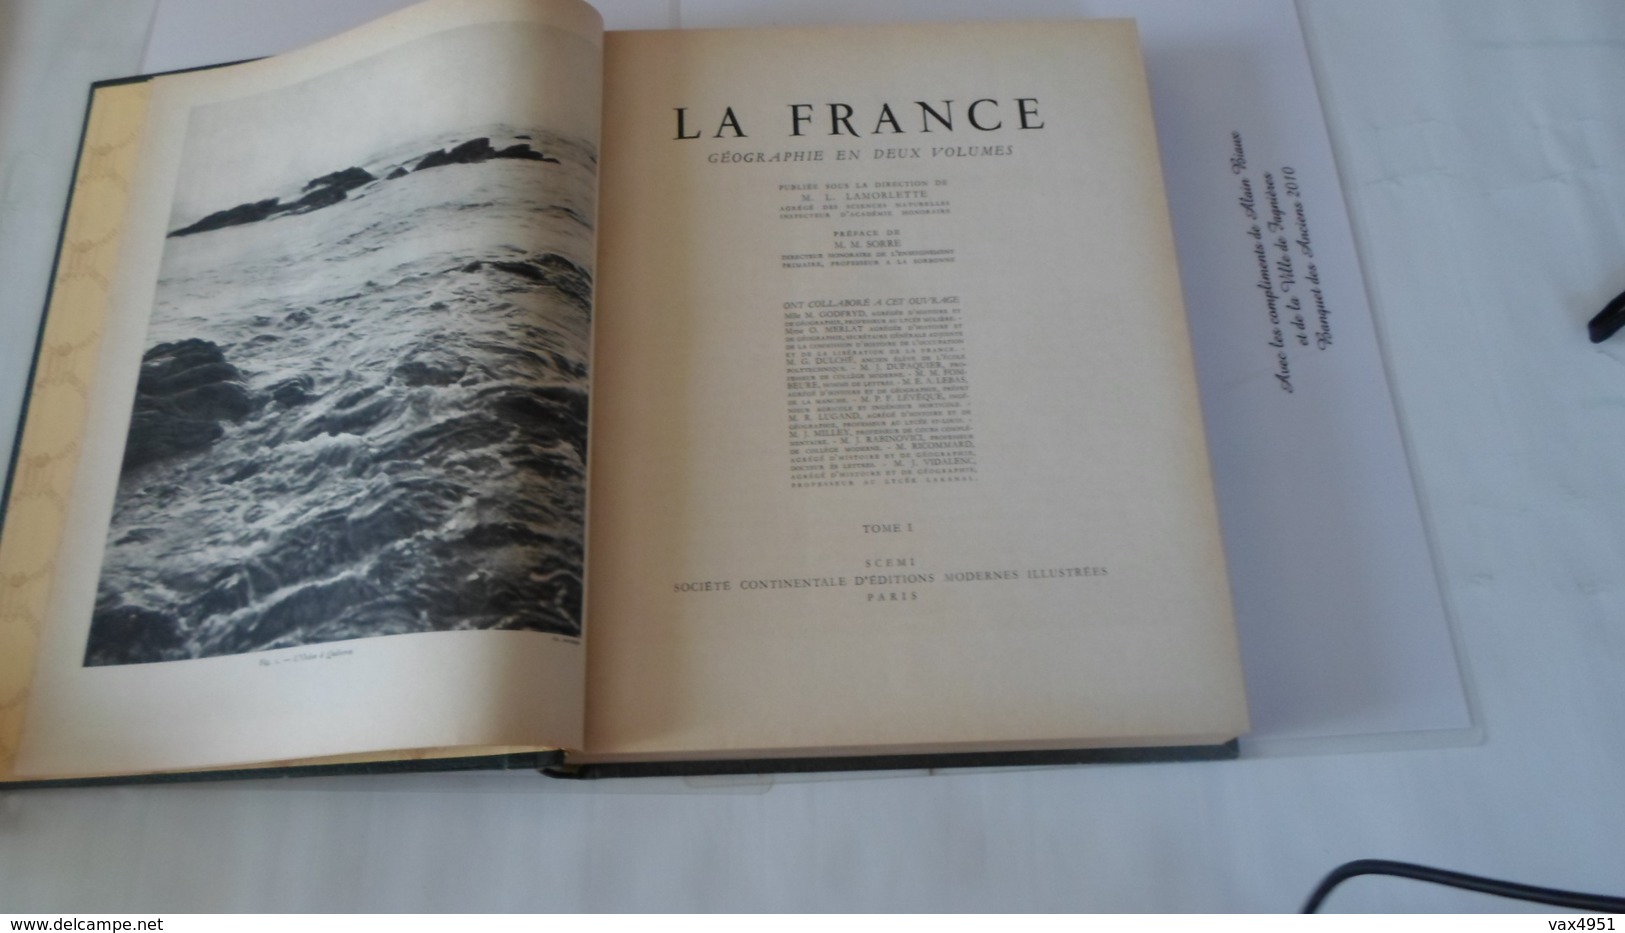 LA FRANCE  GEOGRAPHIE EN DEUX VOLUMES  TOME 1  PAR LAMORLETTE   ****     A   SAISIR ***** - Géographie